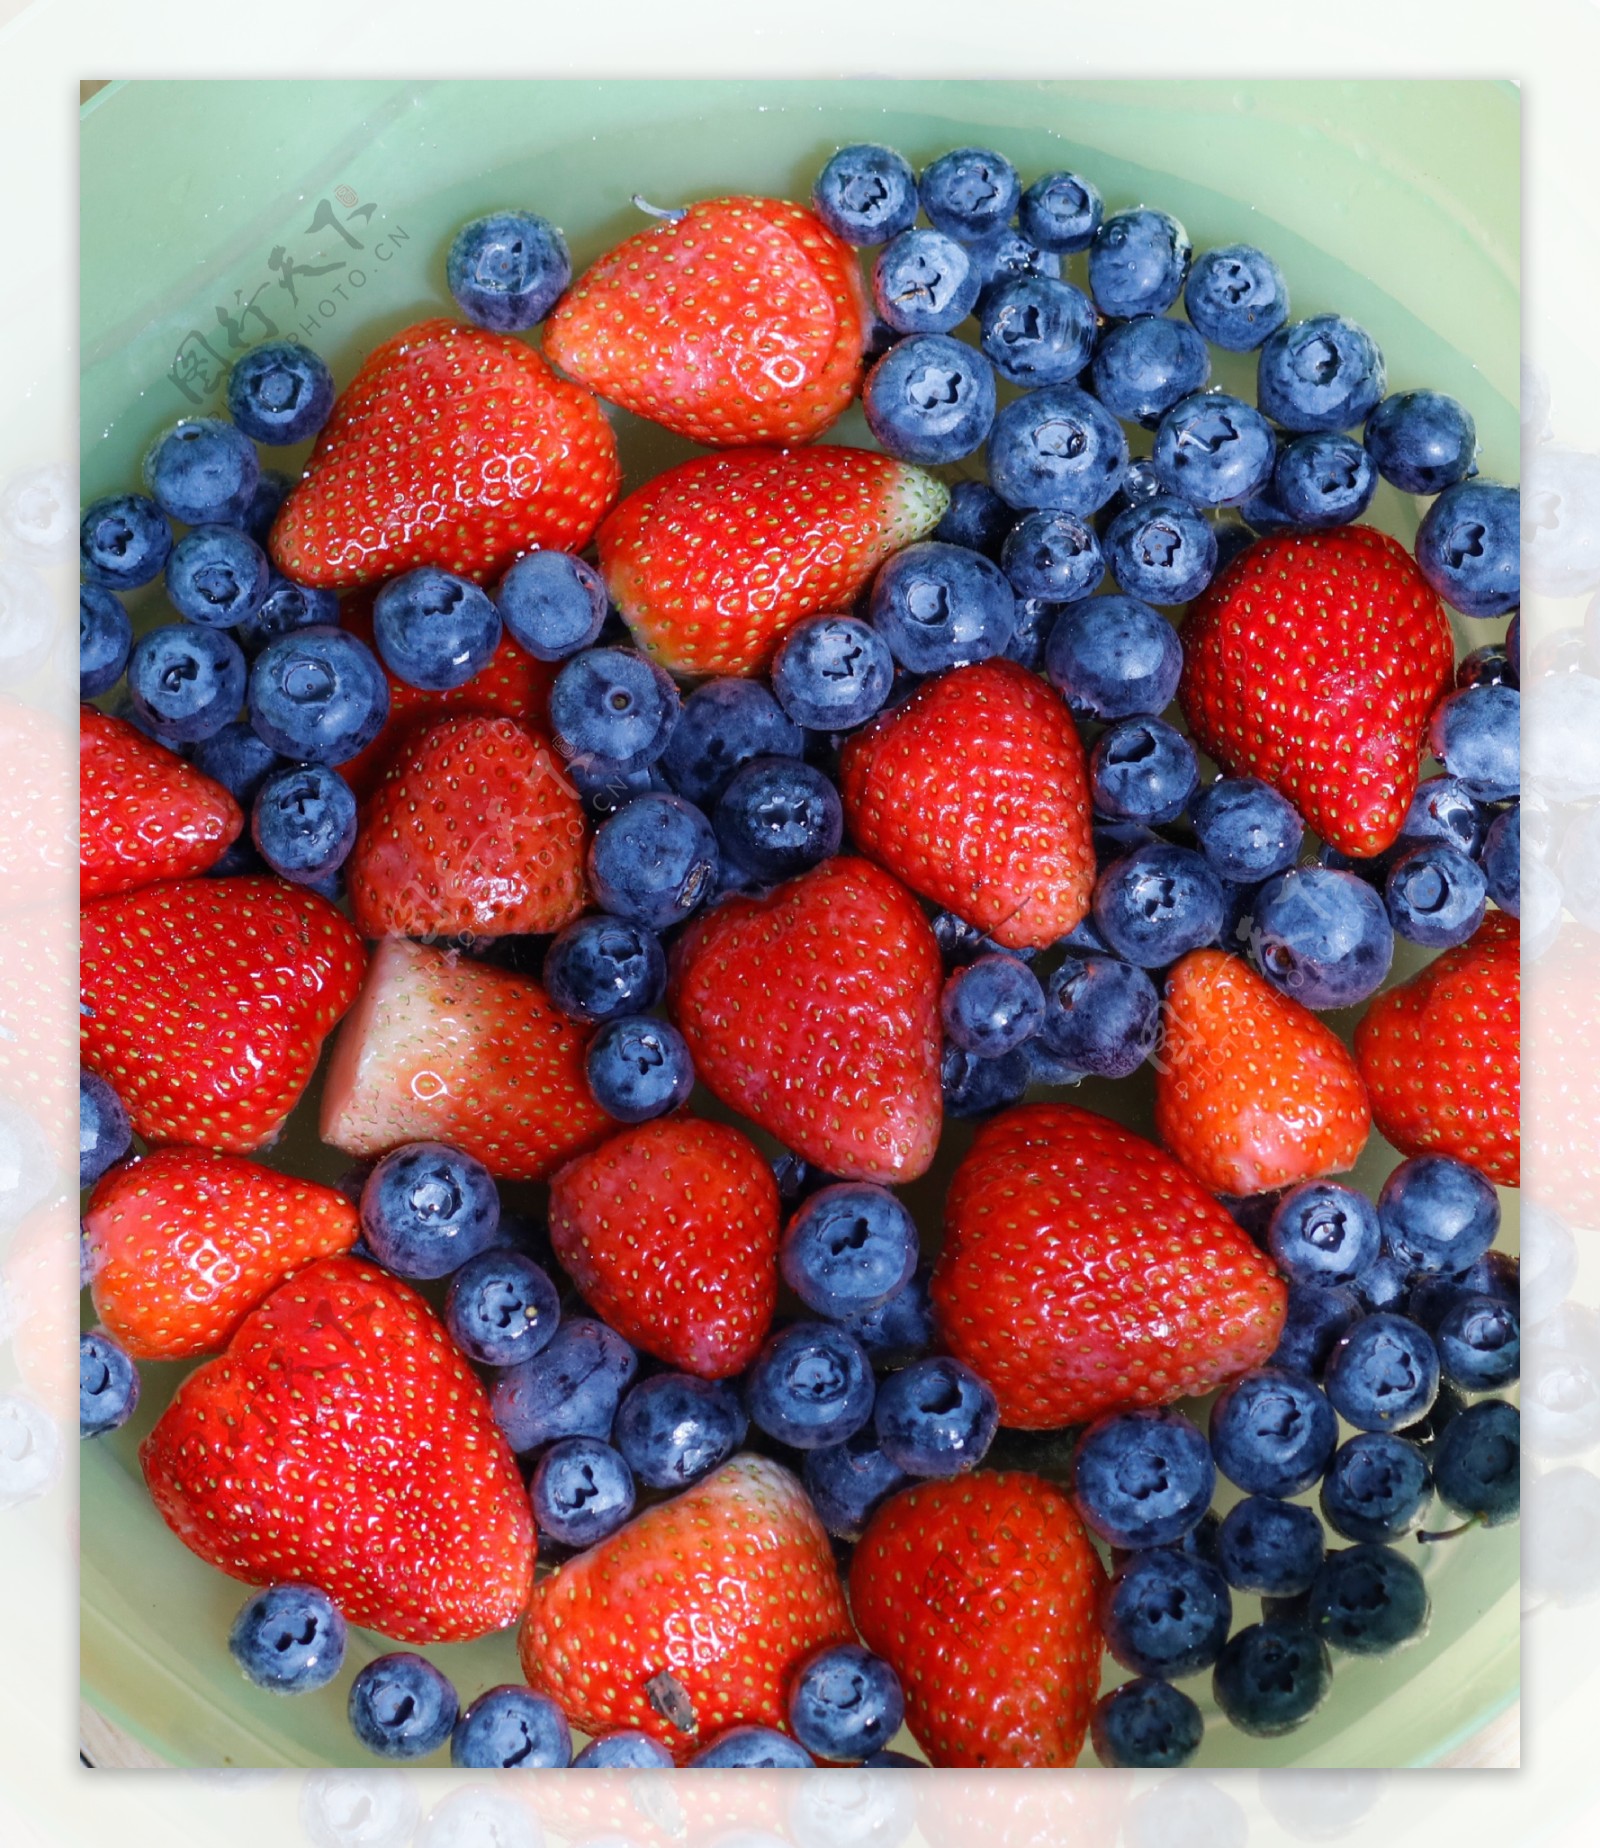 放在一起的的蓝莓和草莓